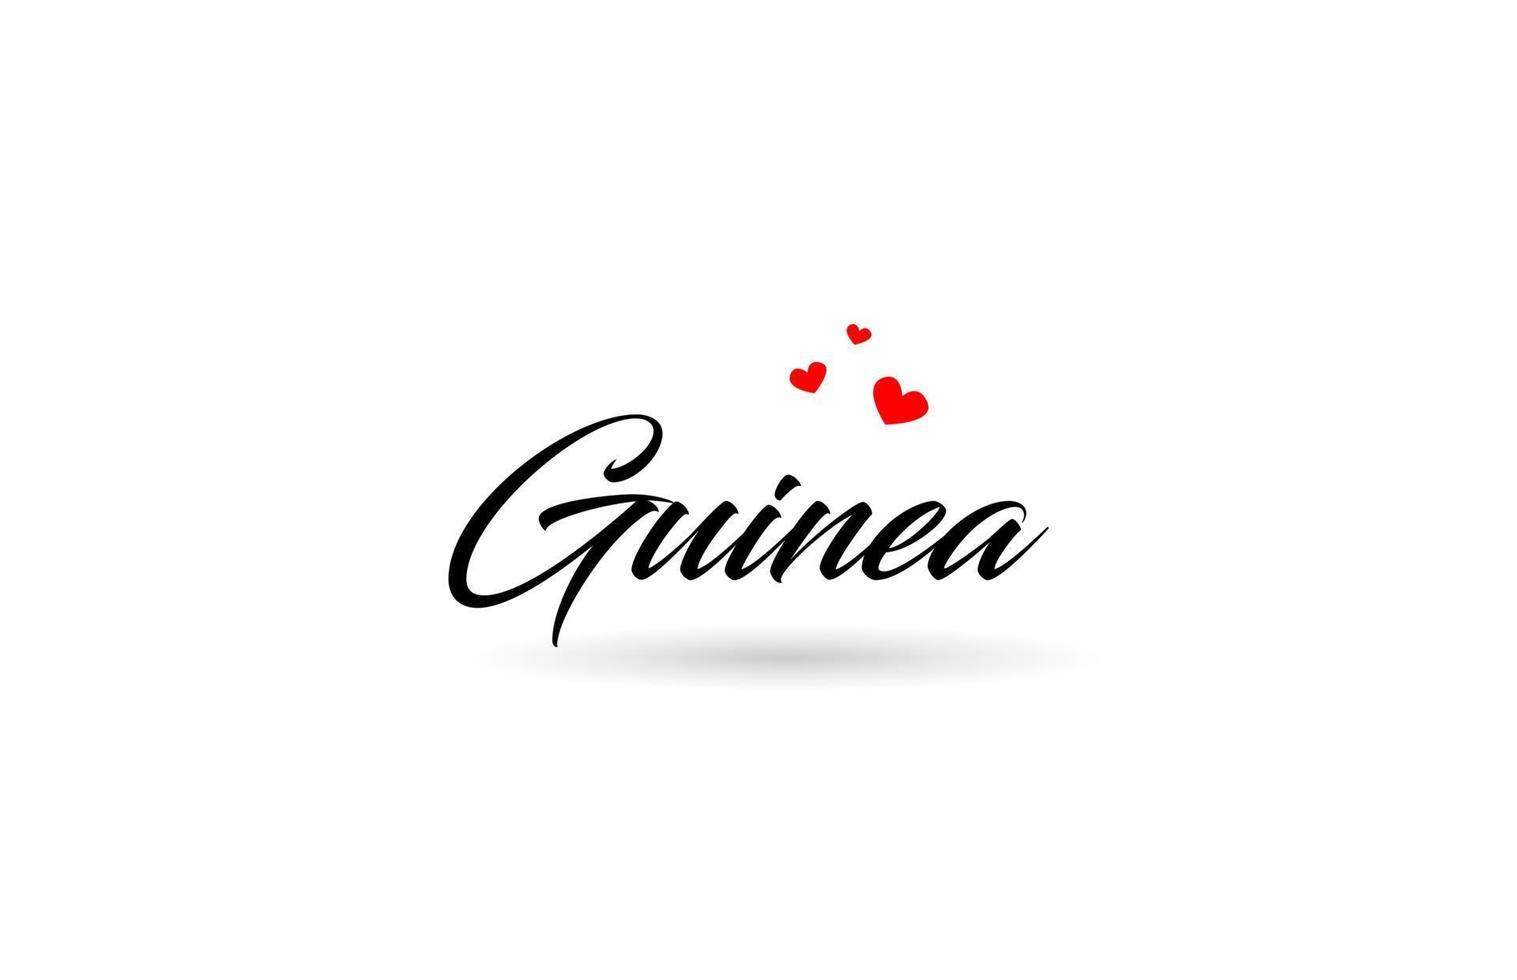 Guinea naam land woord met drie rood liefde hart. creatief typografie logo icoon ontwerp vector